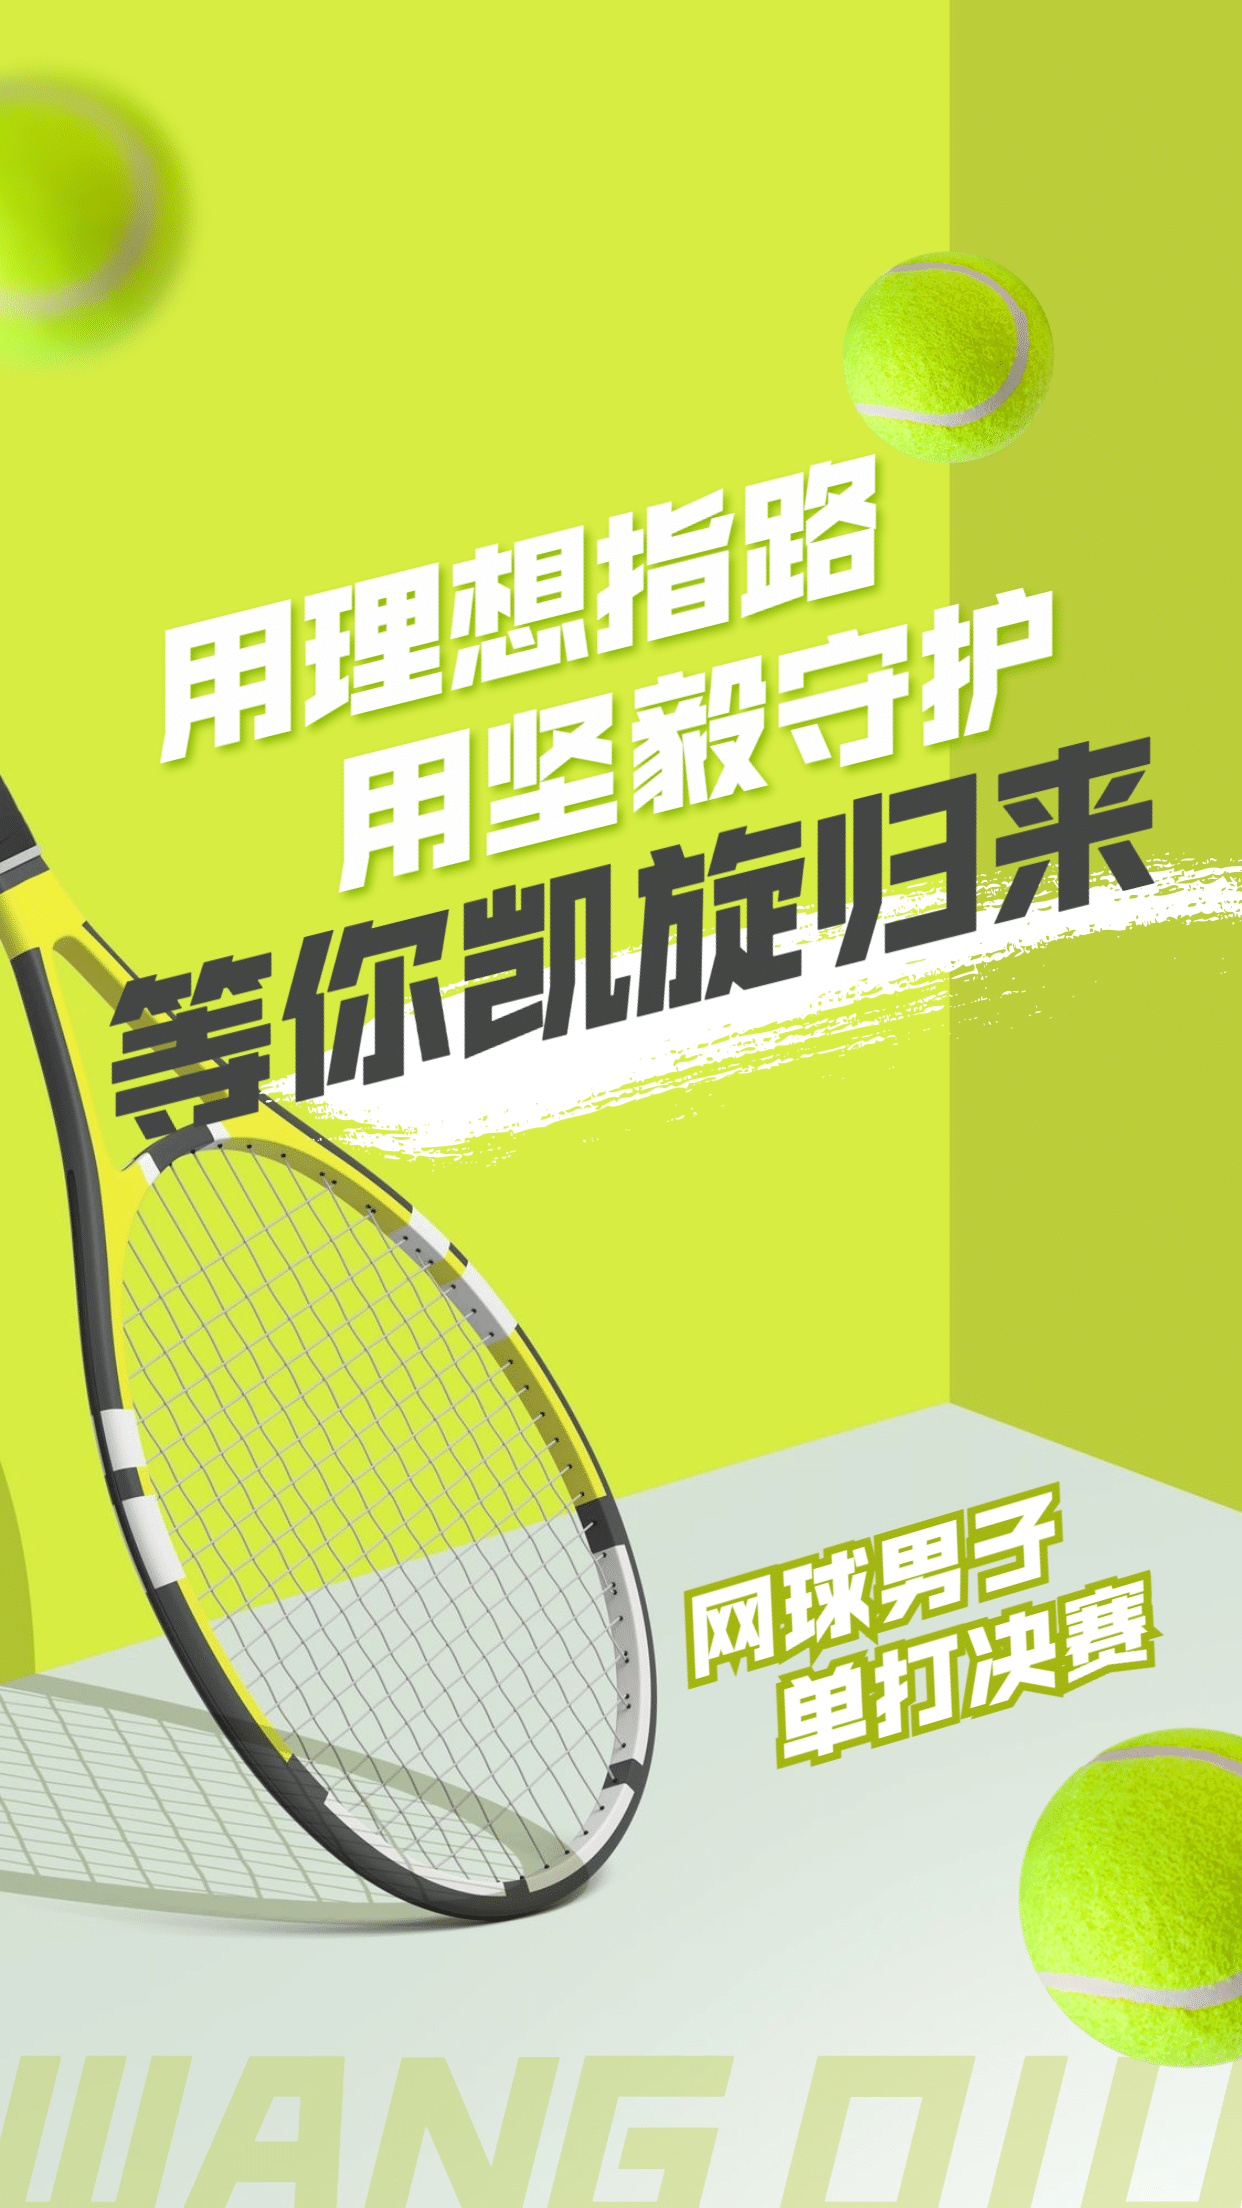 网球运动赛事祝福加油海报